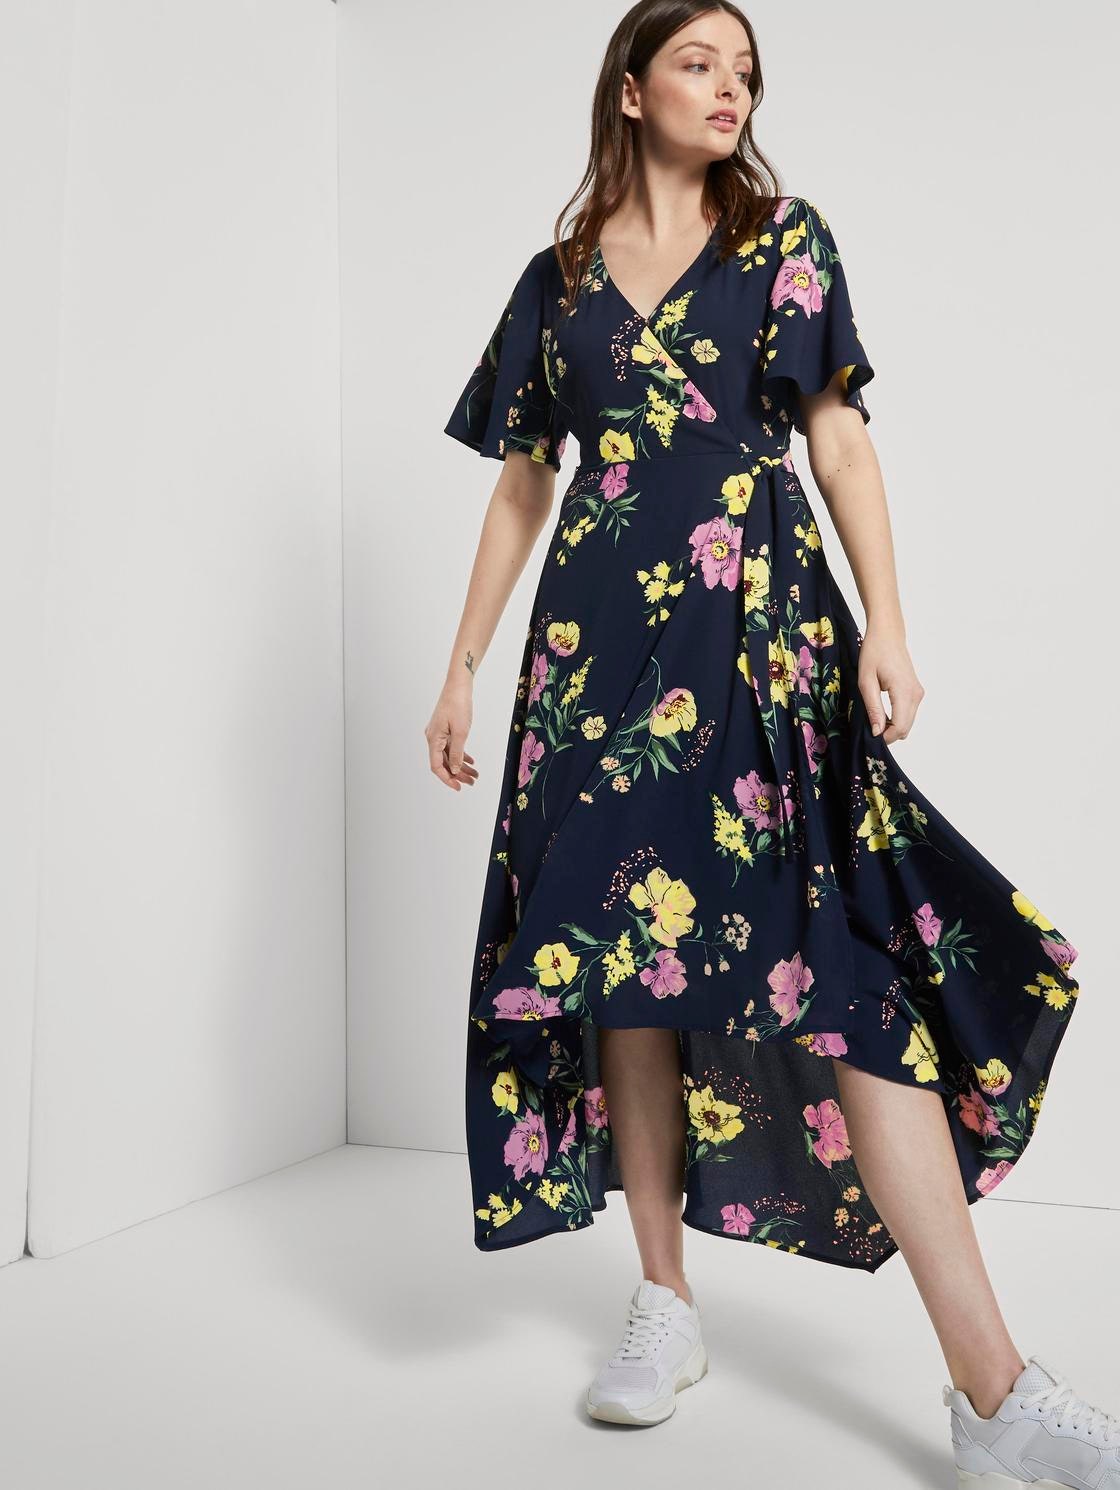 Самые красивые цветочные платья лета 2020